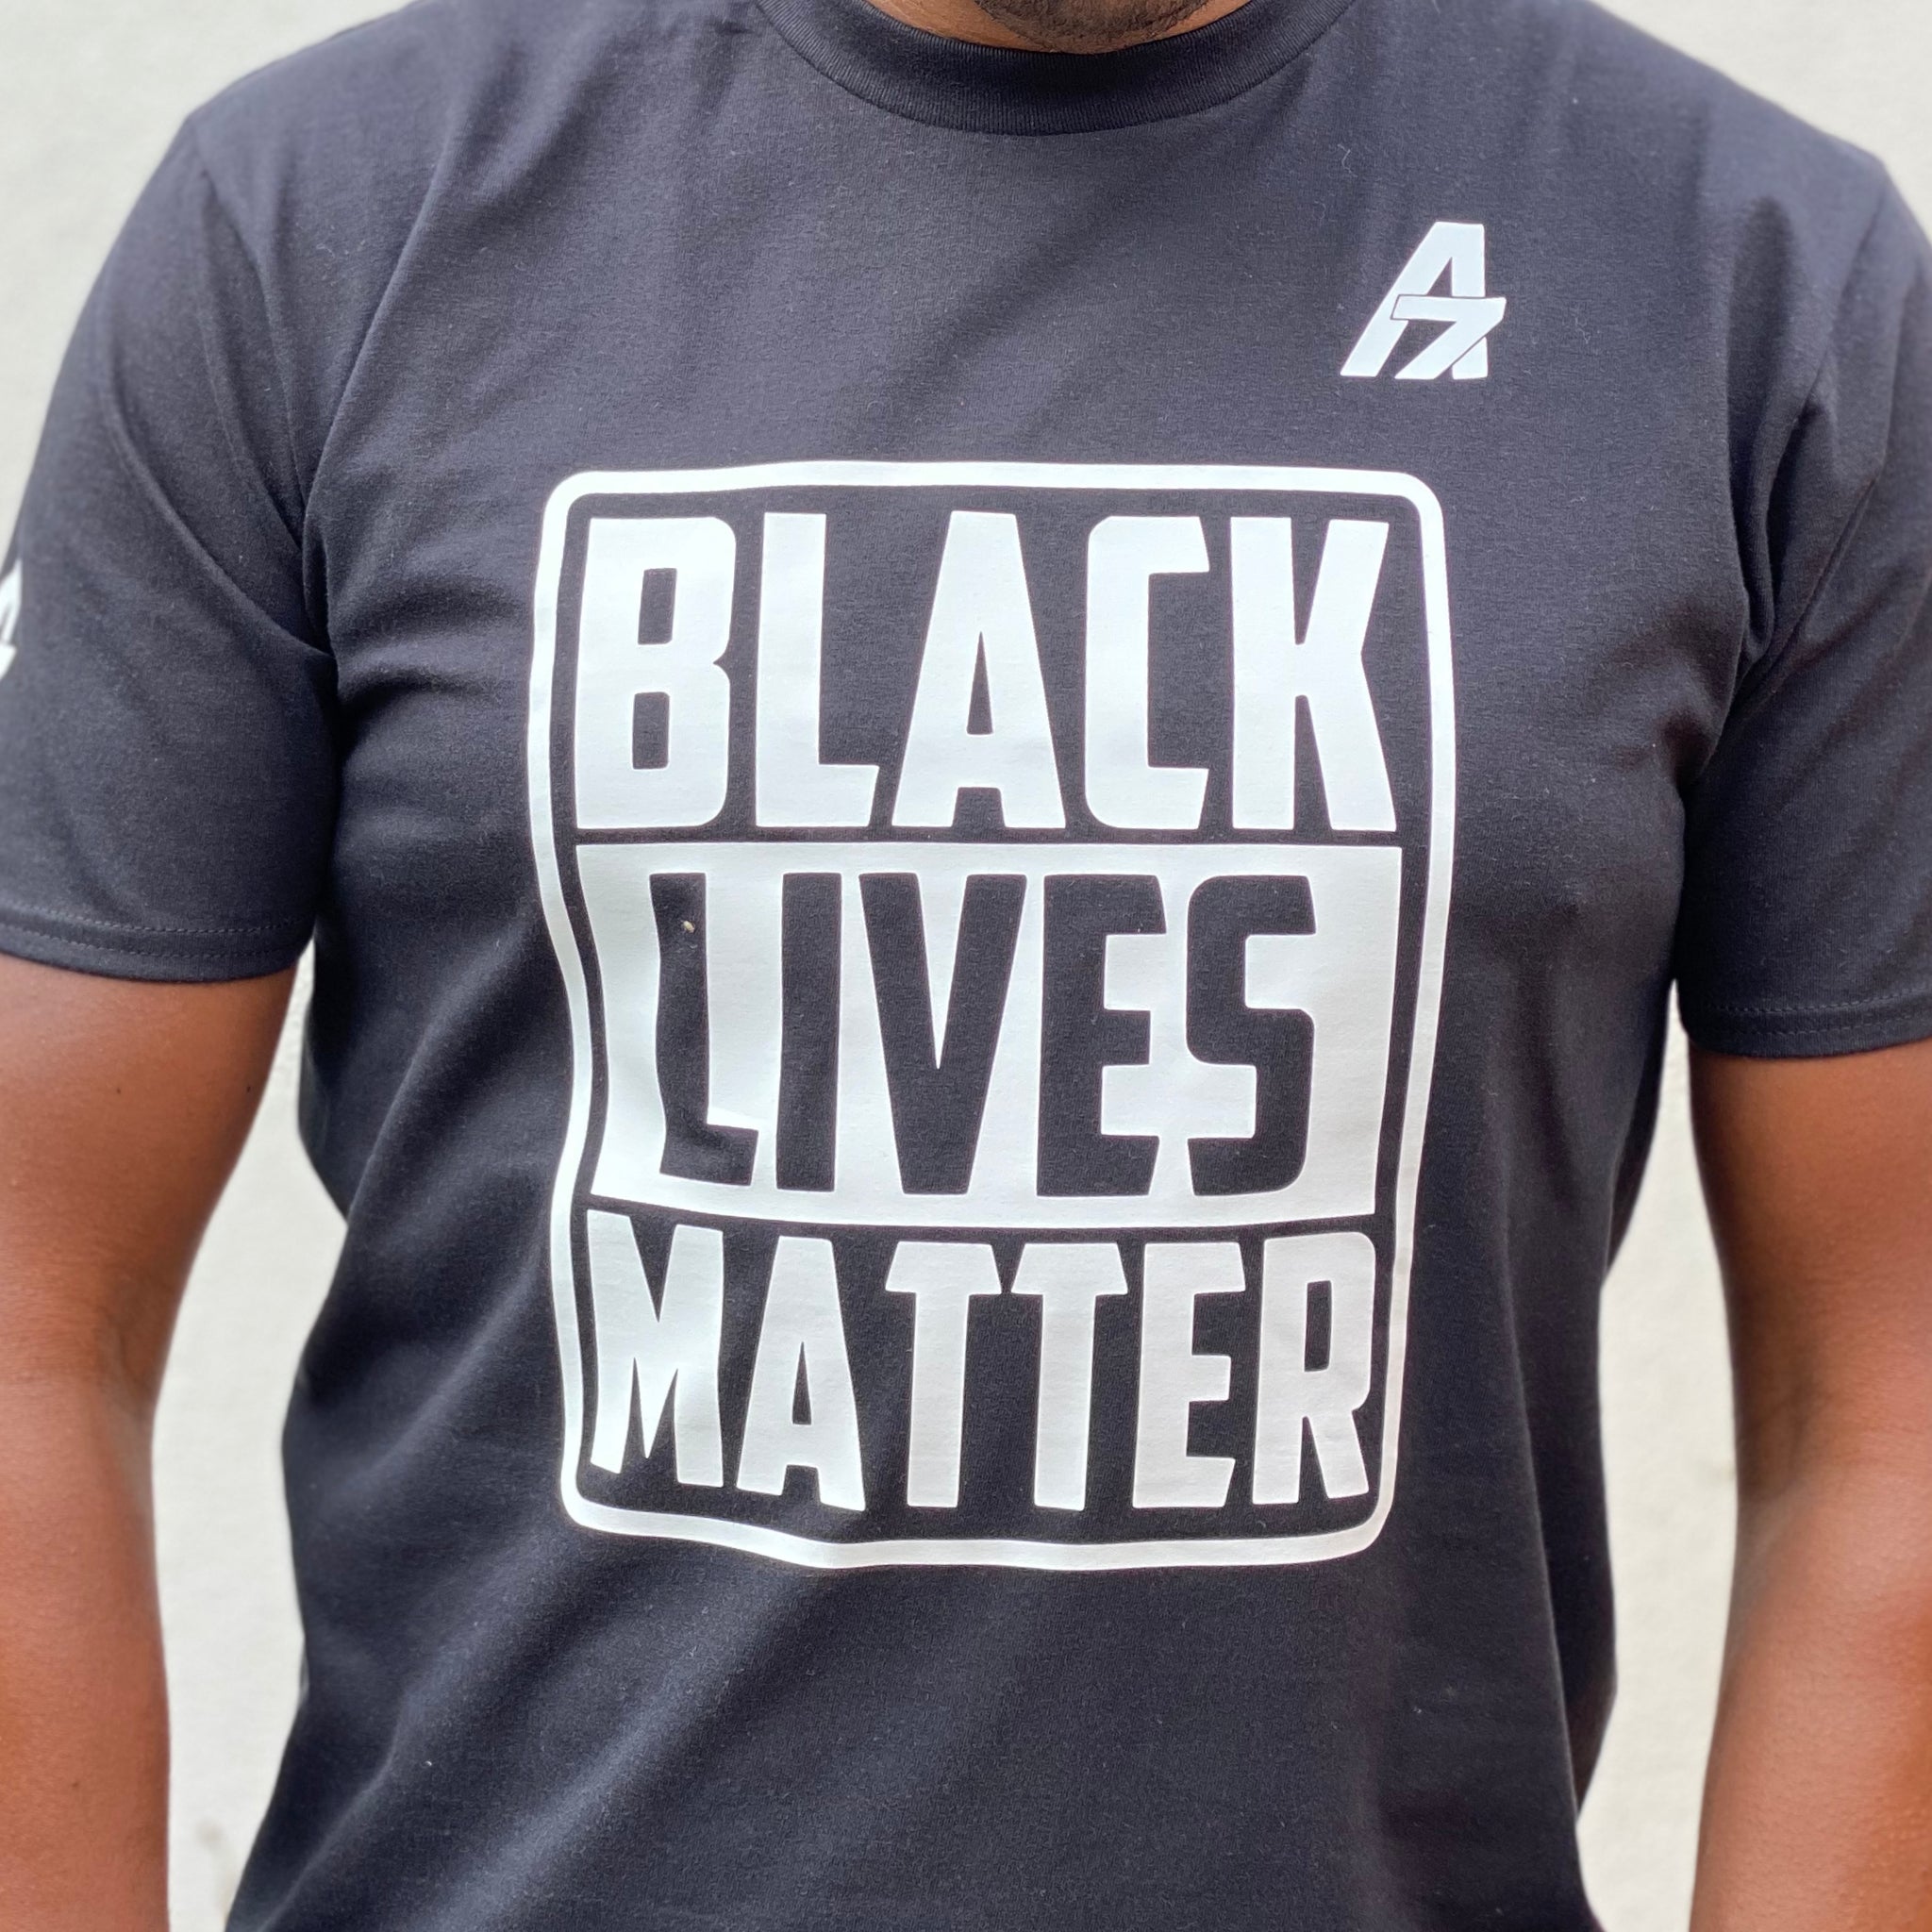 A7Asher "Black Lives Matter " Black T-Shirt, White A7 Logo